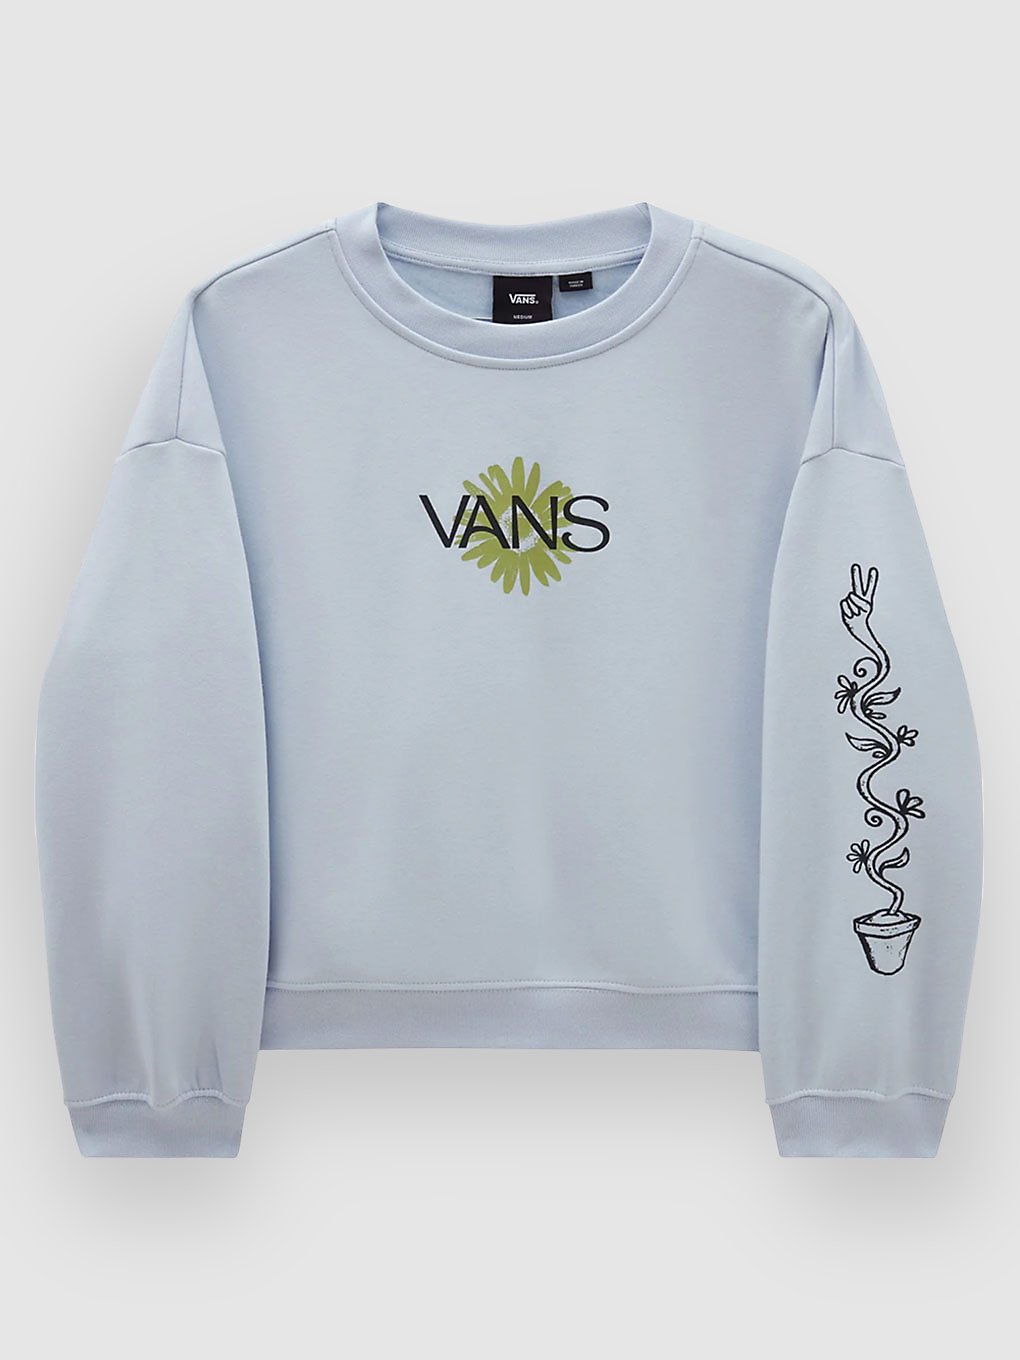 Vans Bee Peace Slouchy Crew Sweater halogen blue kaufen